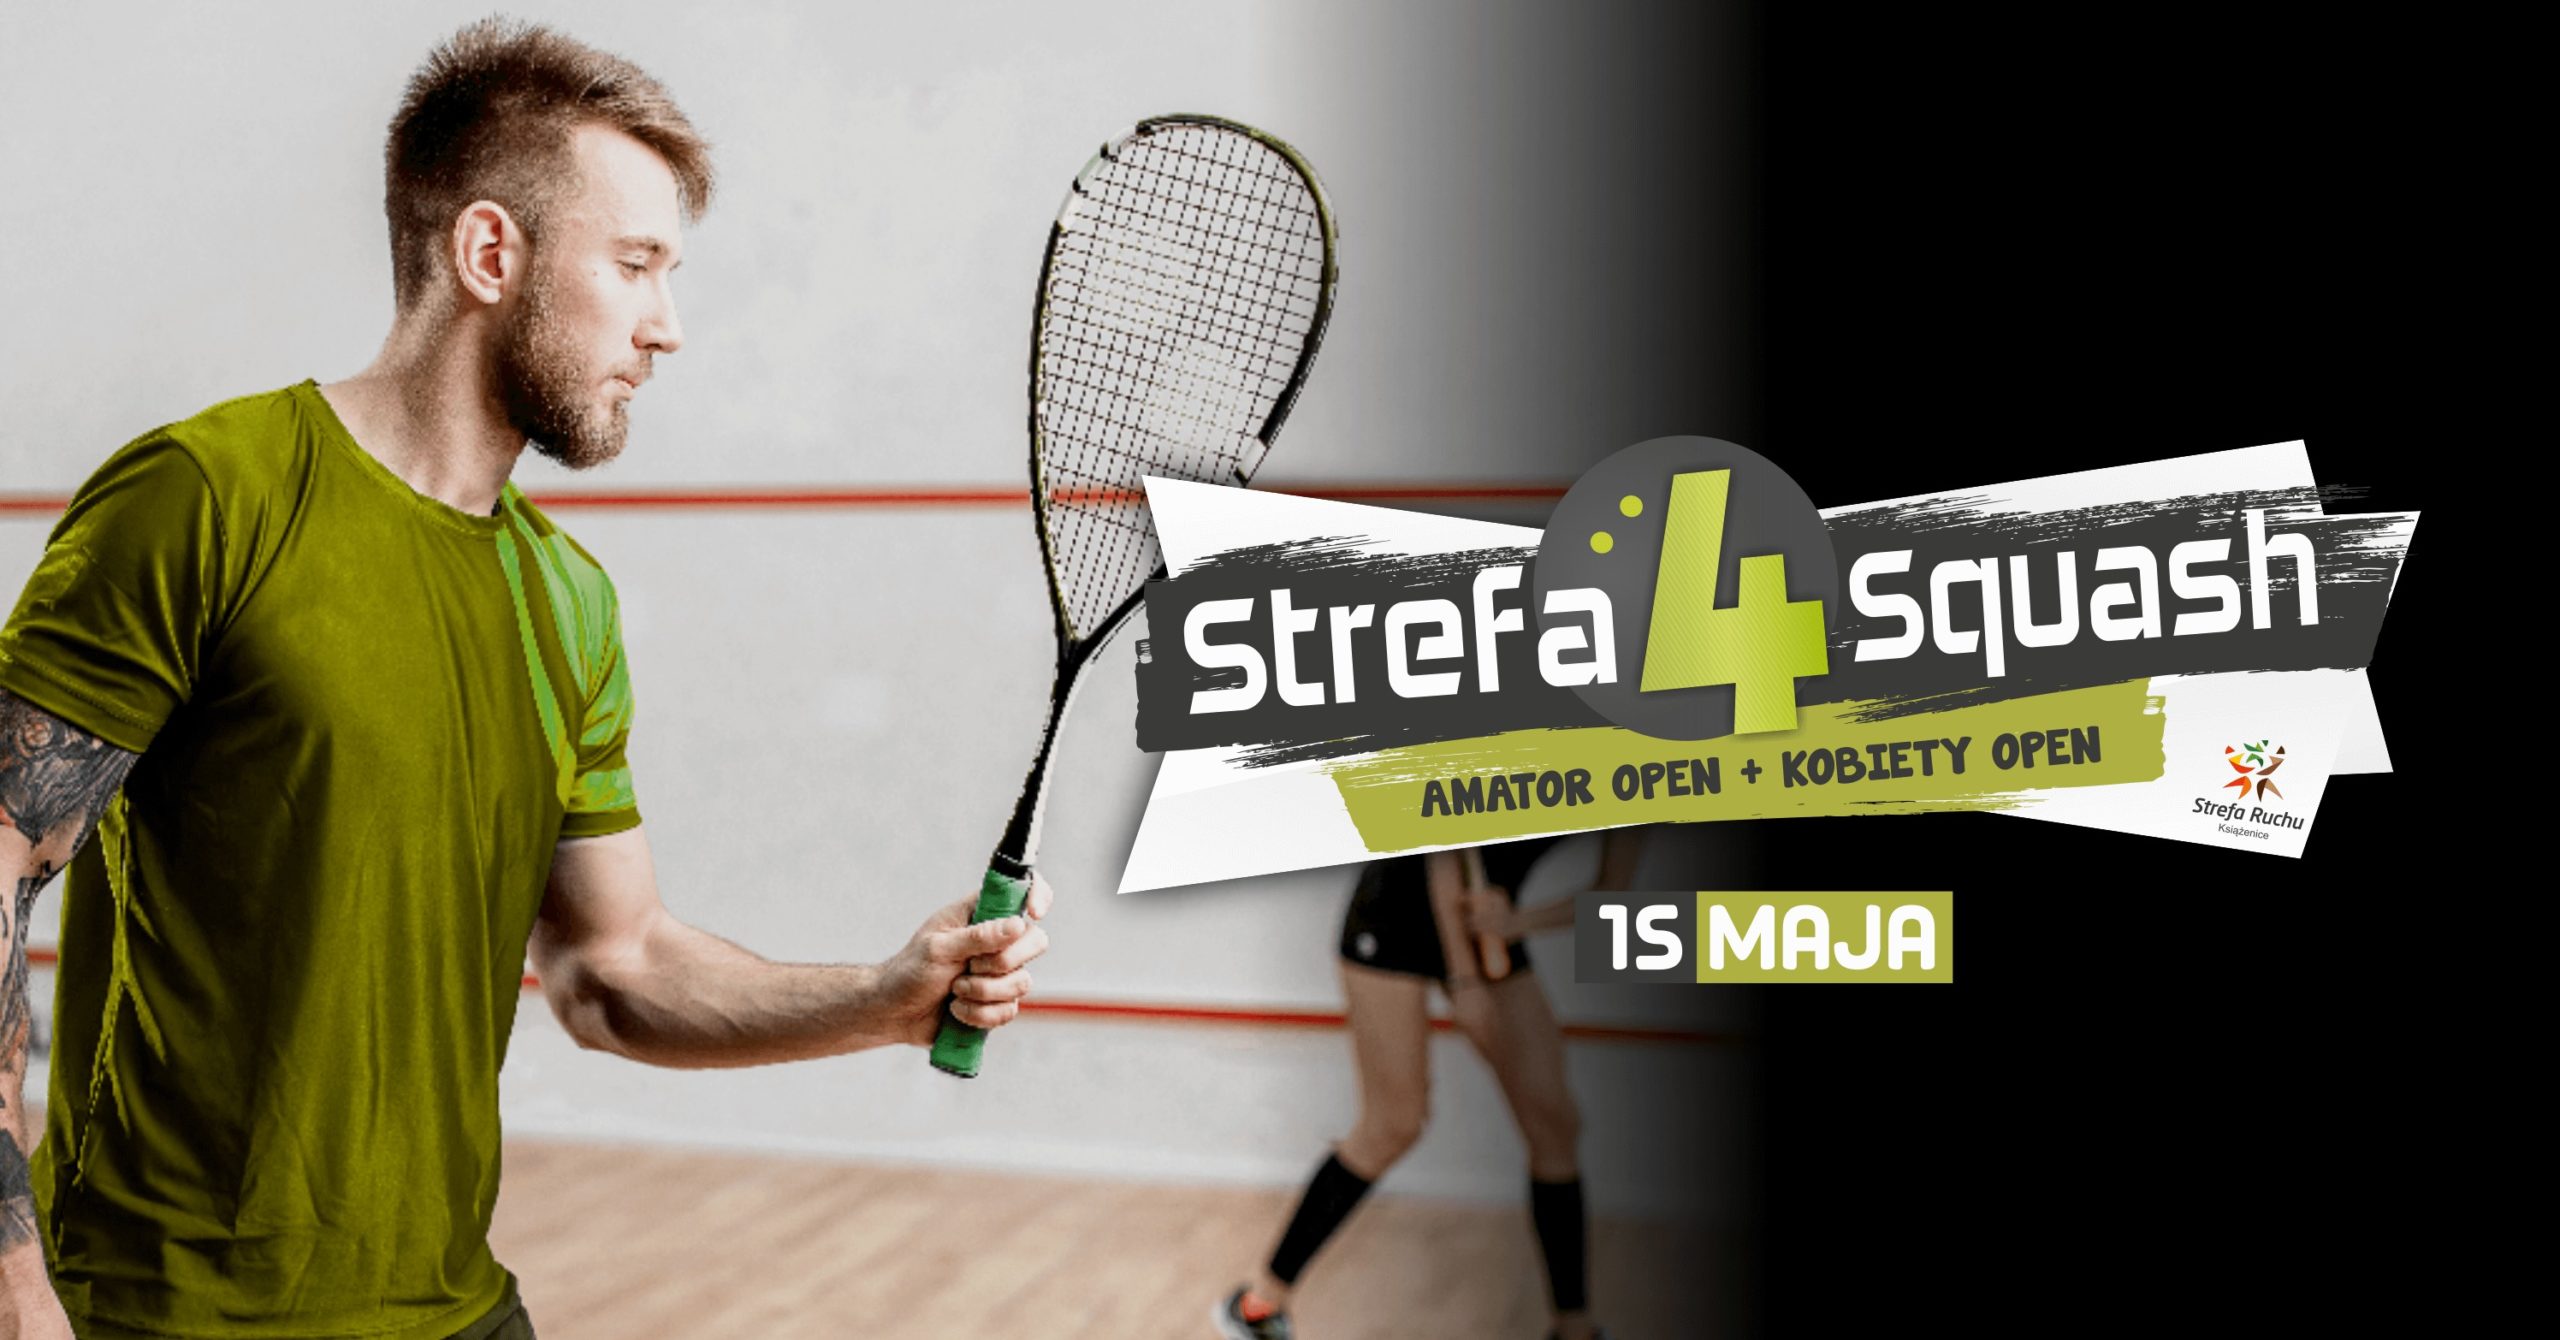 Strefa4squash - amatorski turniej squasha